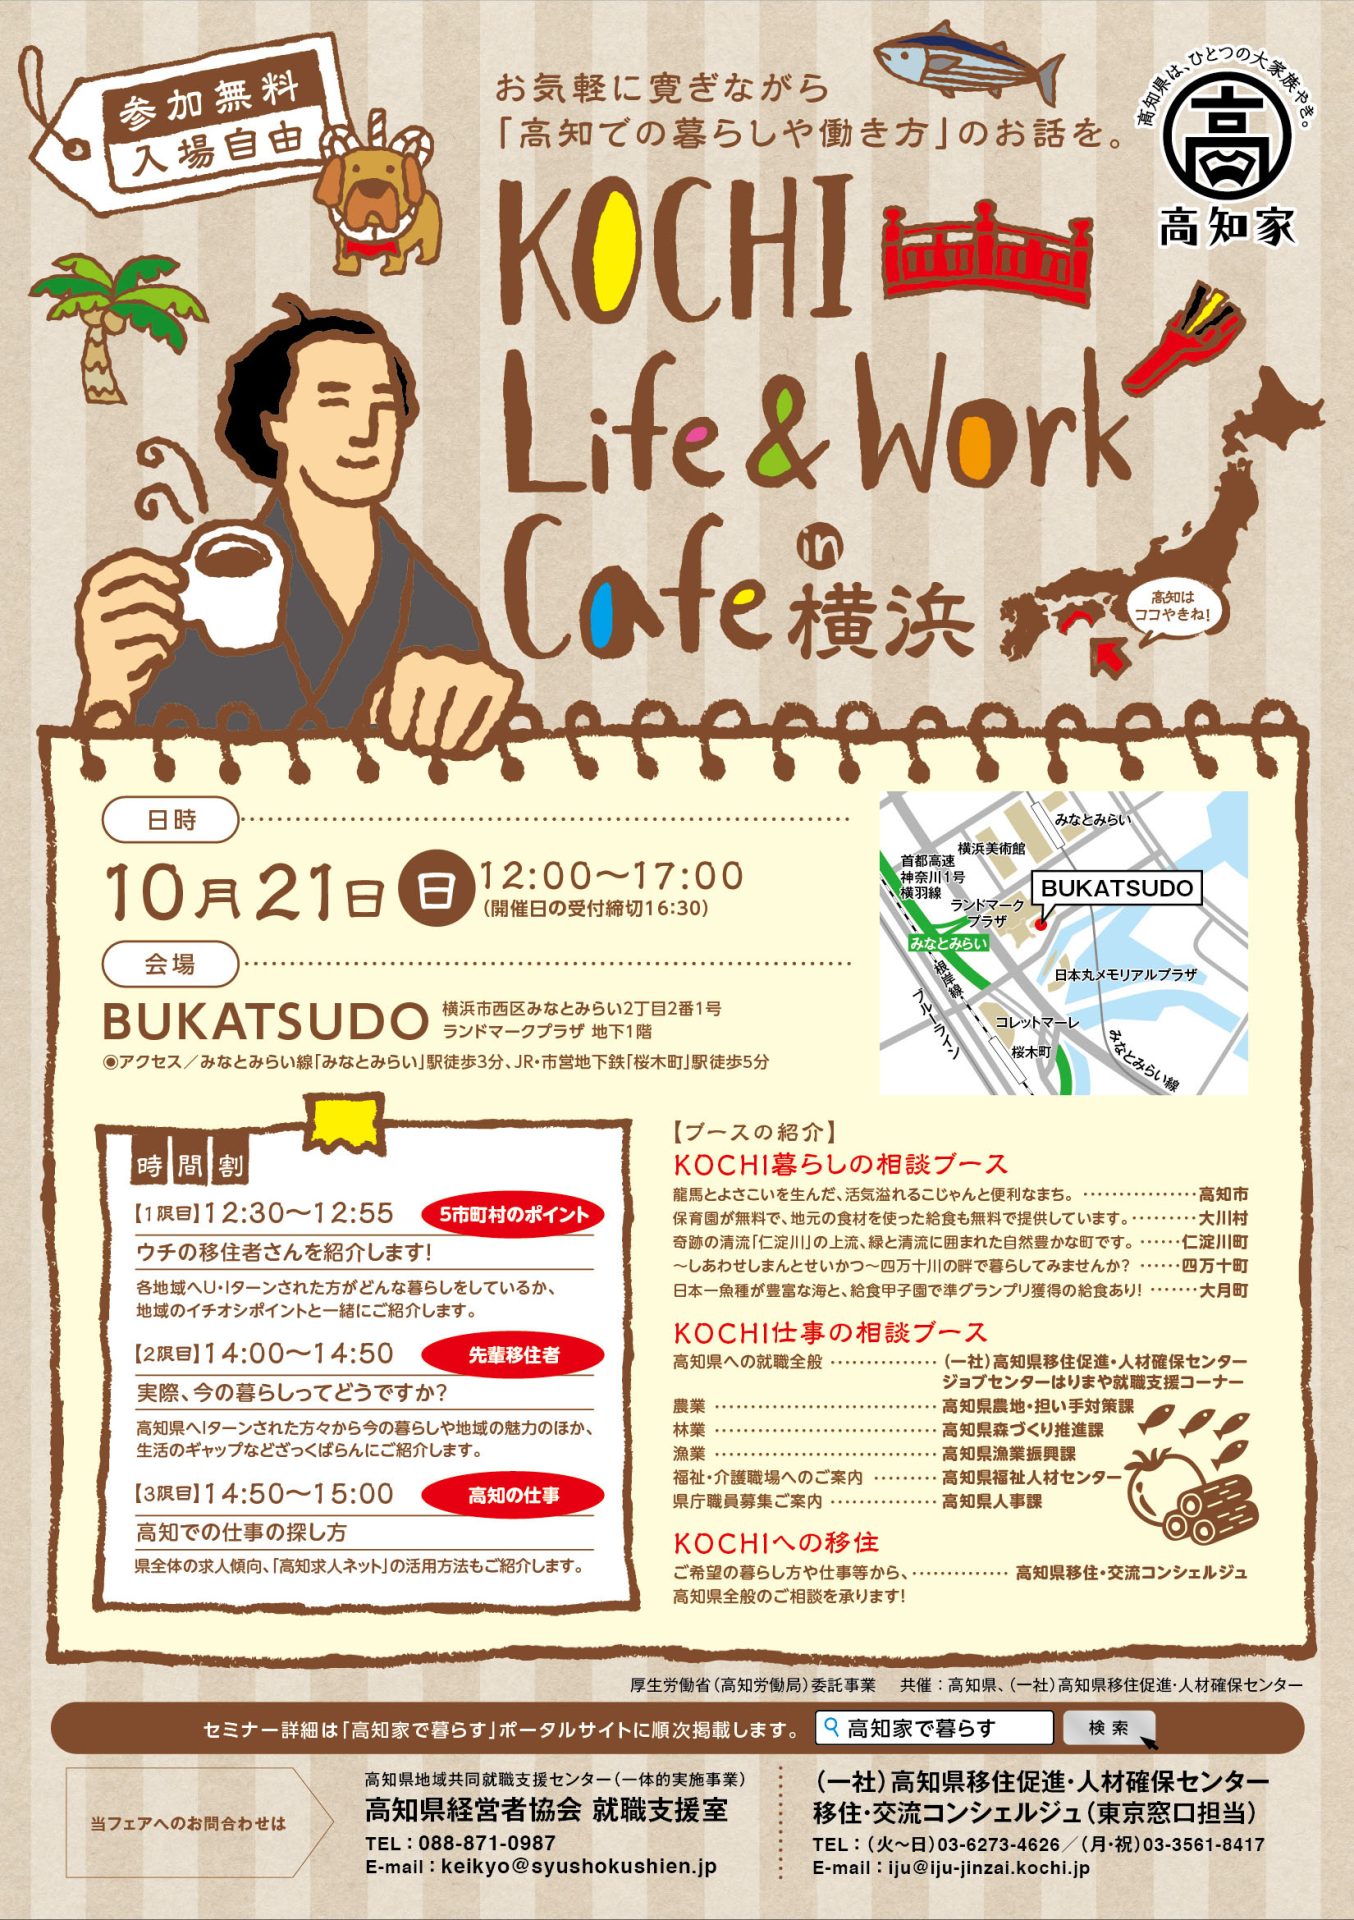 KOCHI Life＆Work Cafe in 横浜 | 移住関連イベント情報